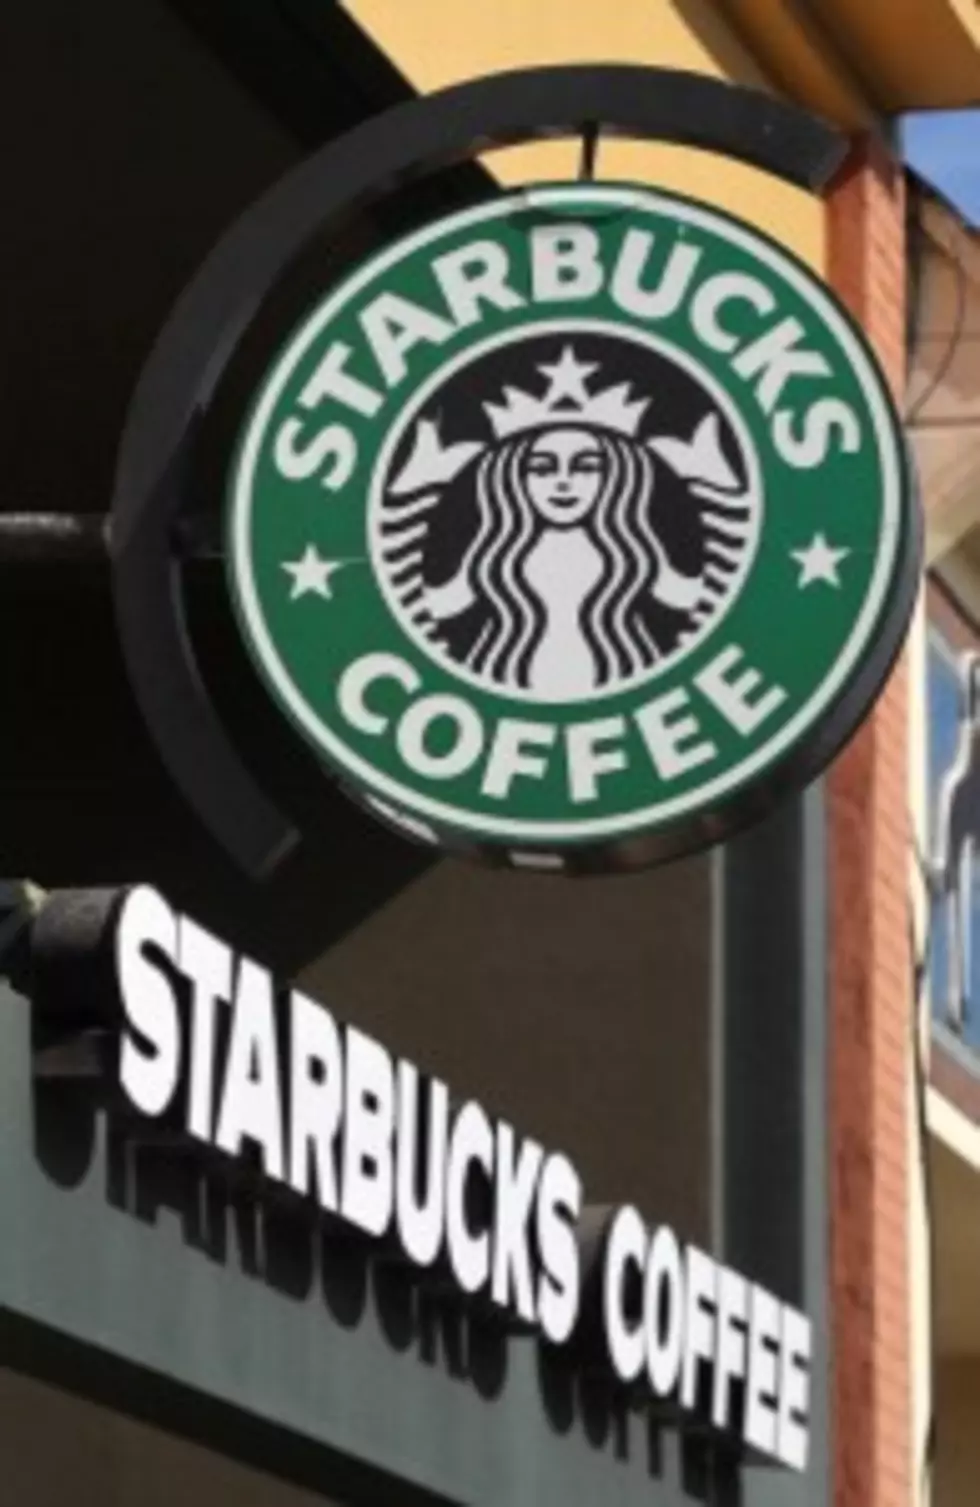 Pro-Gun Advocates Celebrate Starbucks Appreciation Day